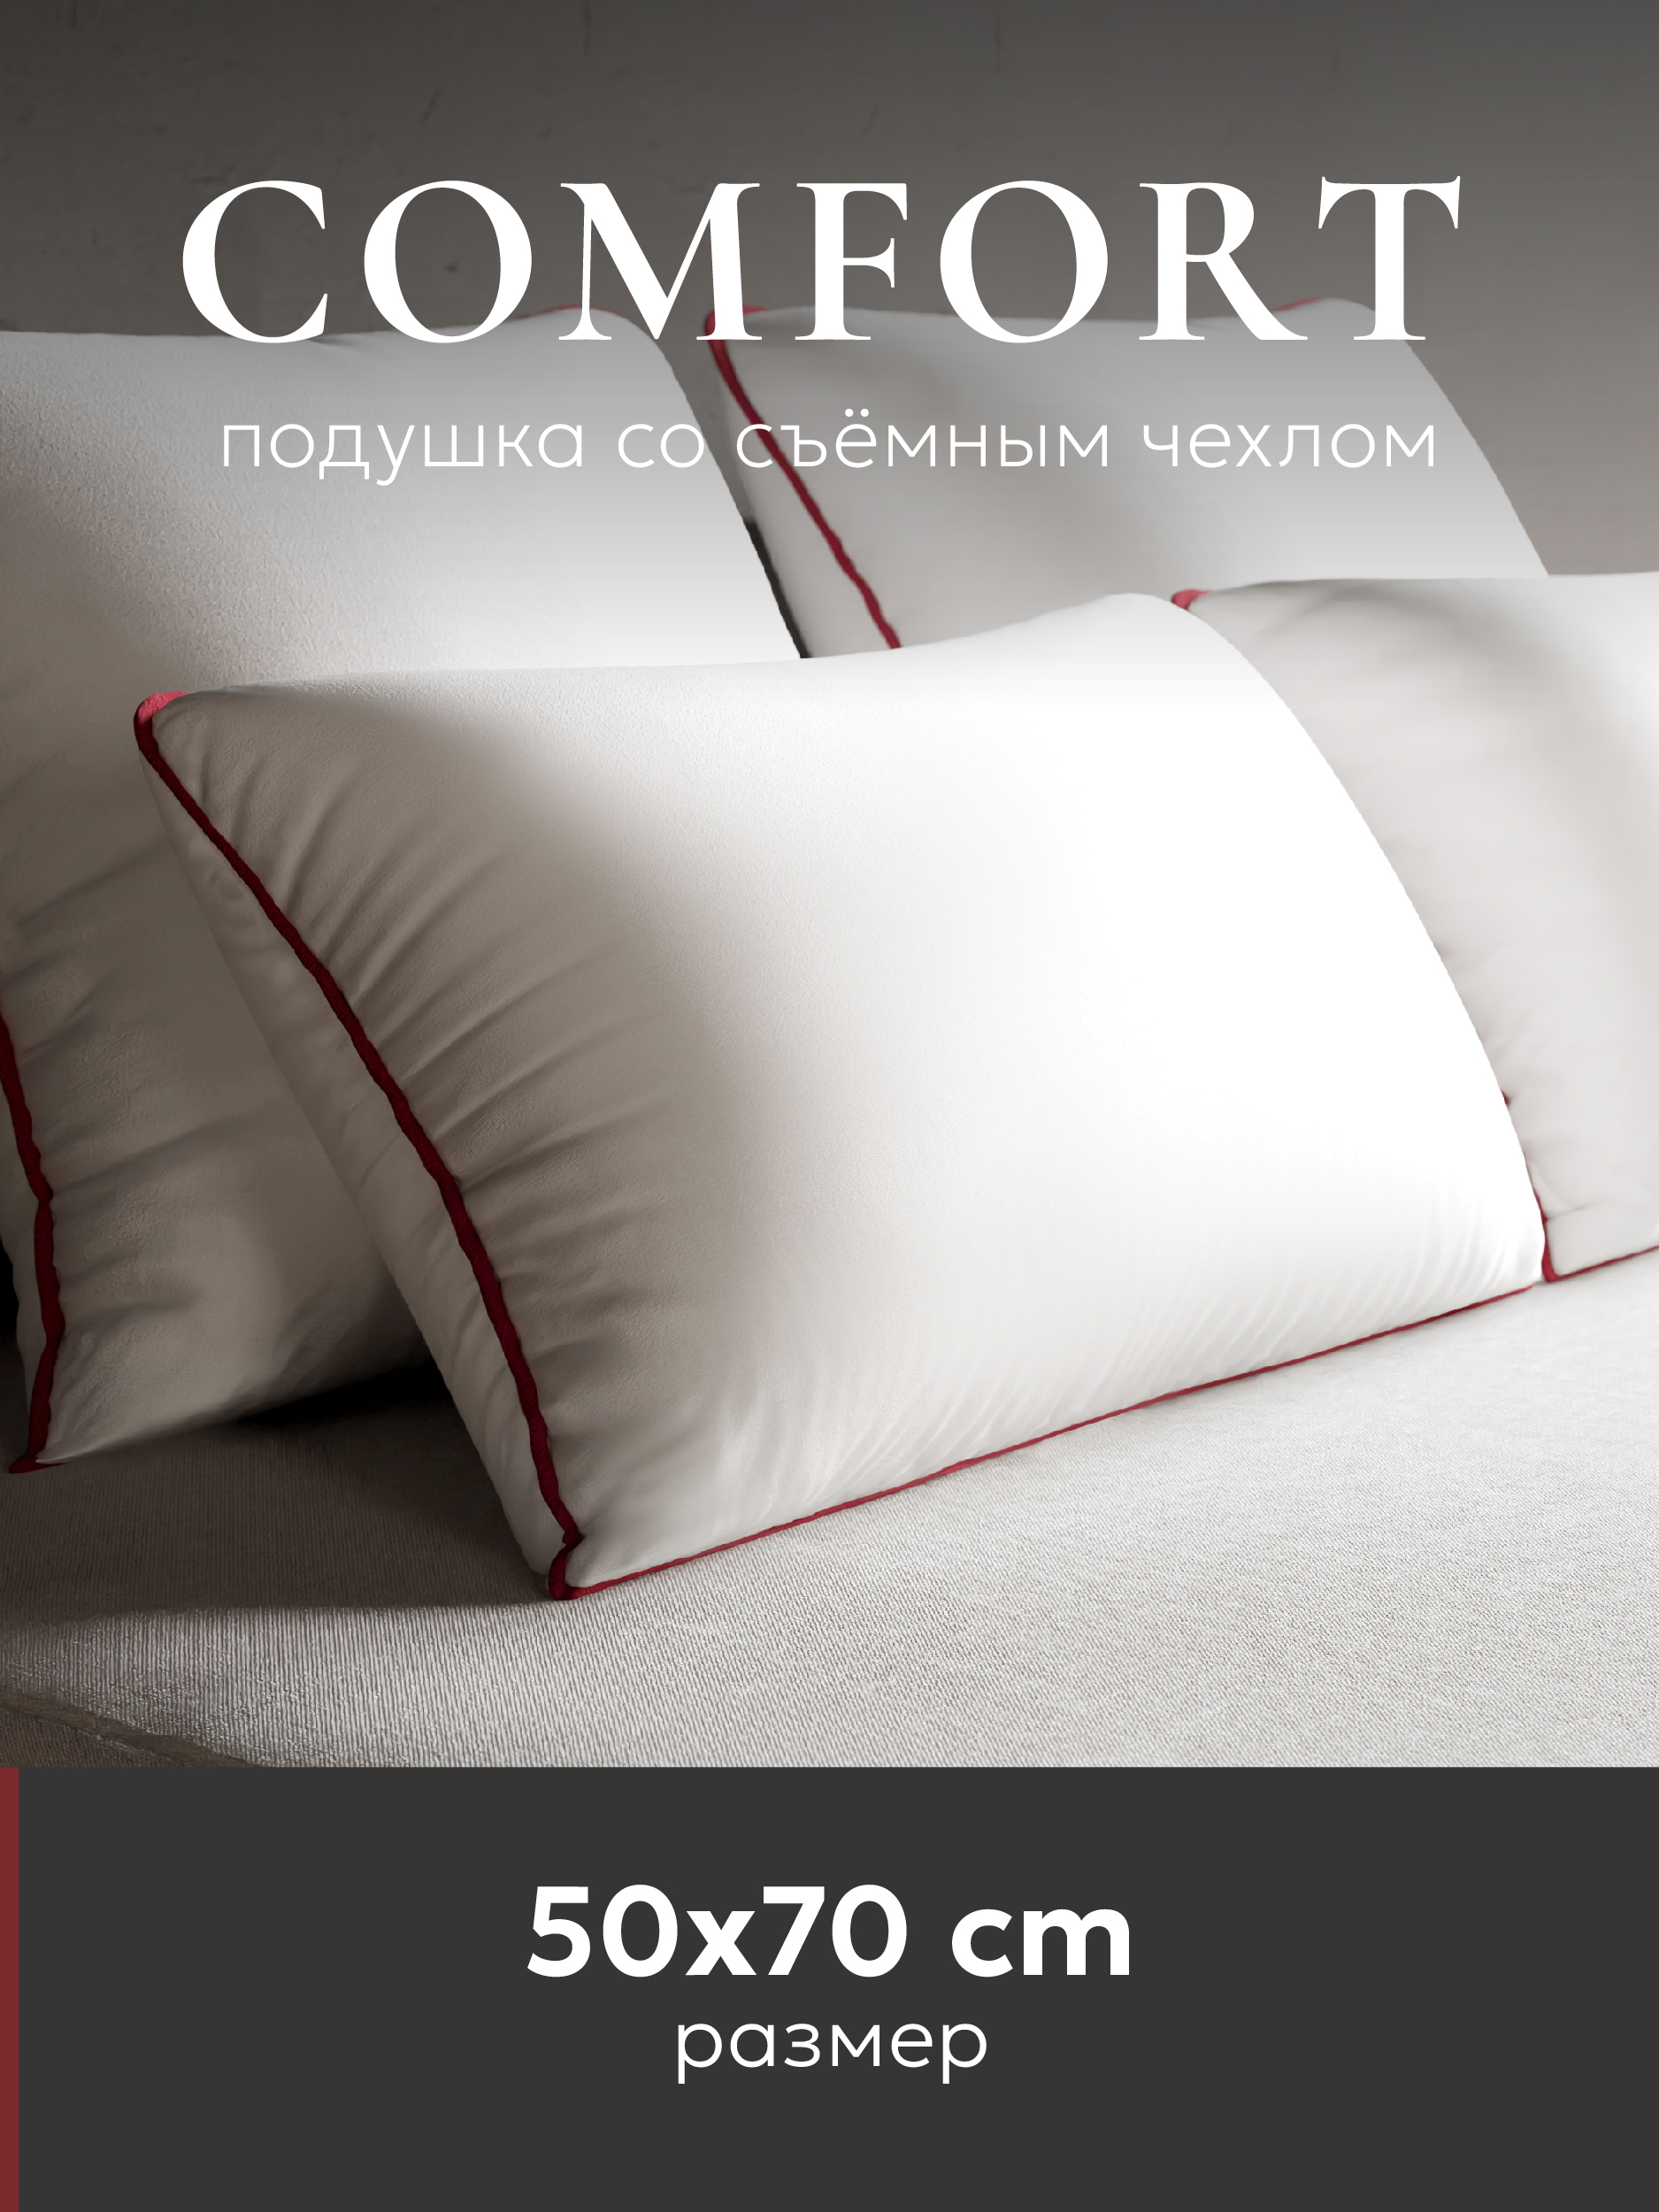   Espera Comfort /     5070